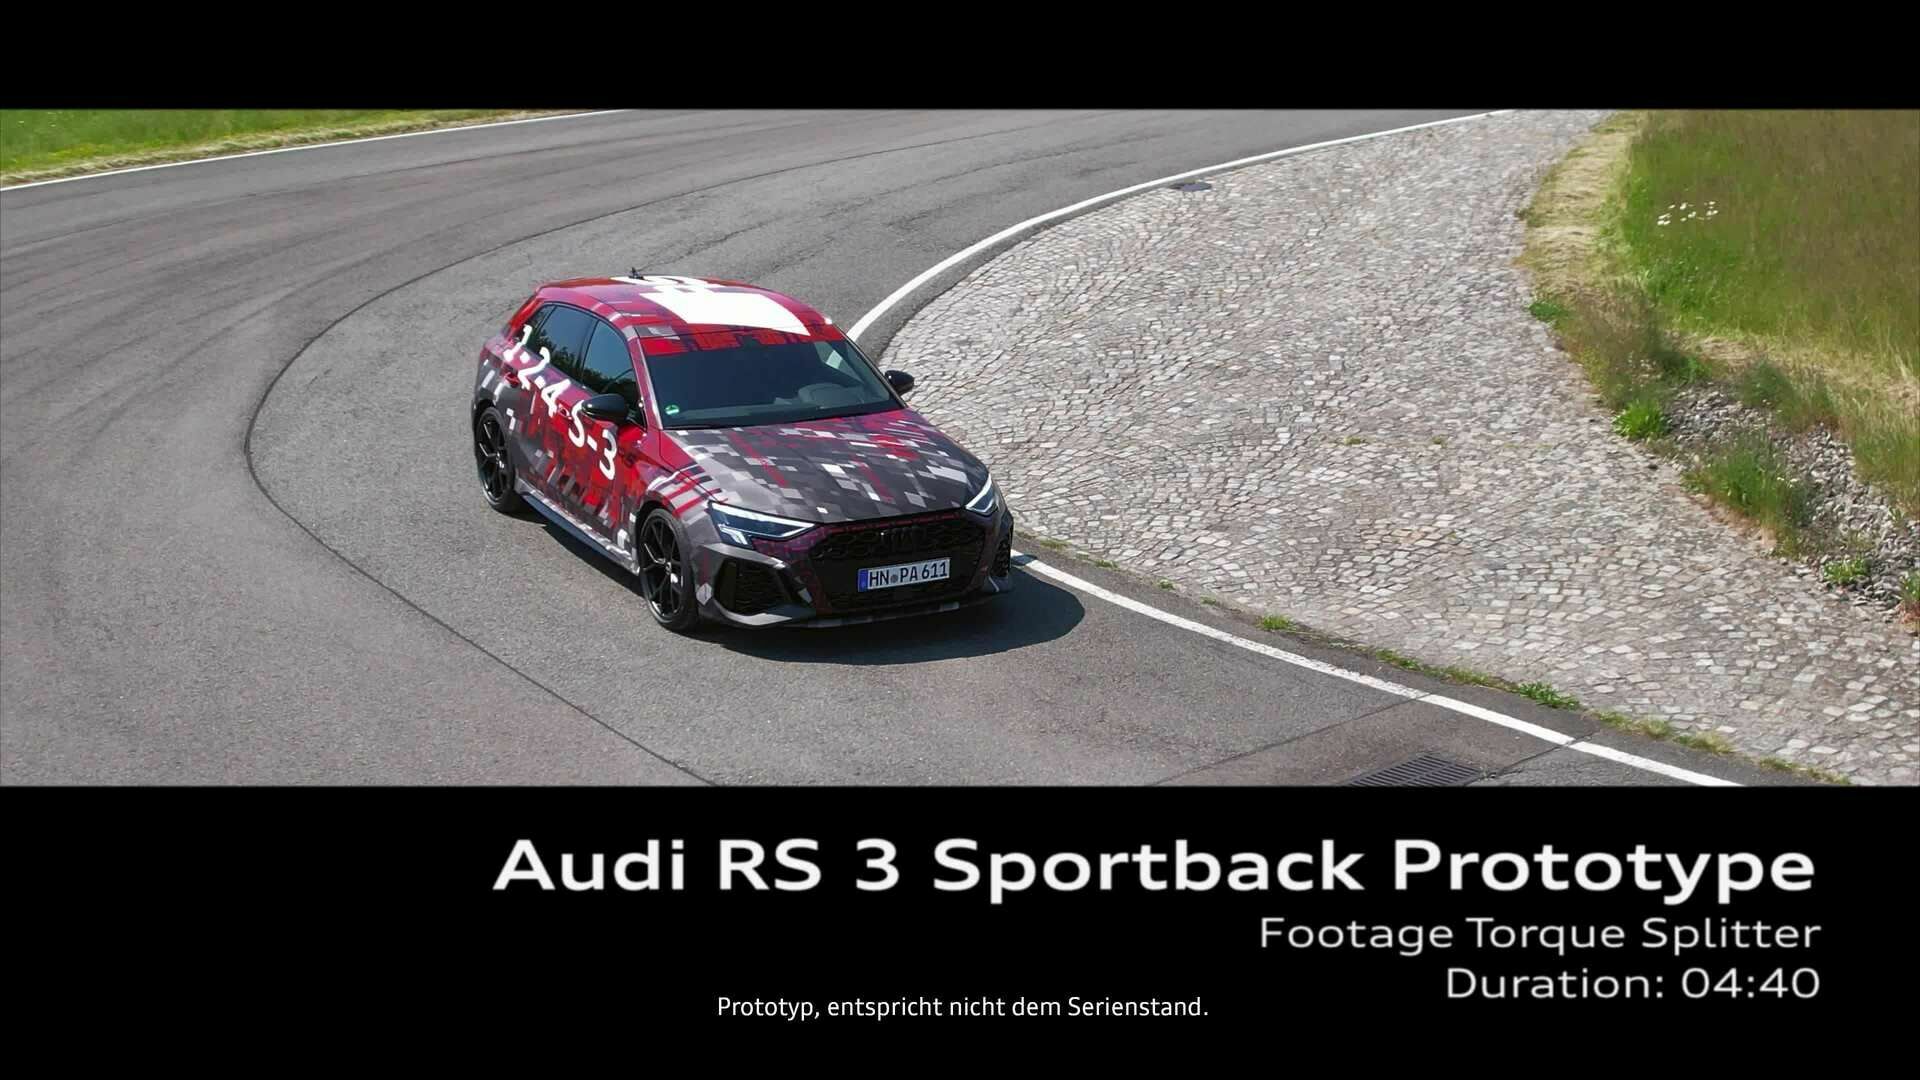 Footage Audi RS 3 Sportback Prototyp